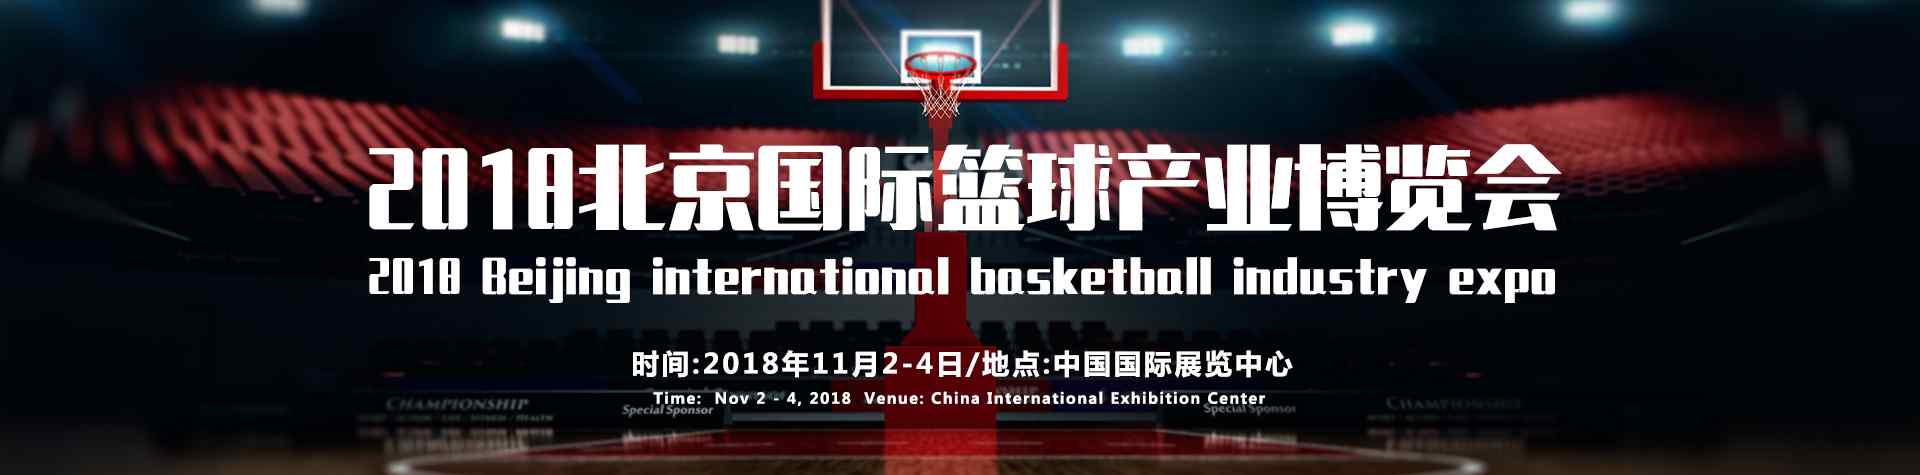 蓝球 2018北京国际篮球产业博览会